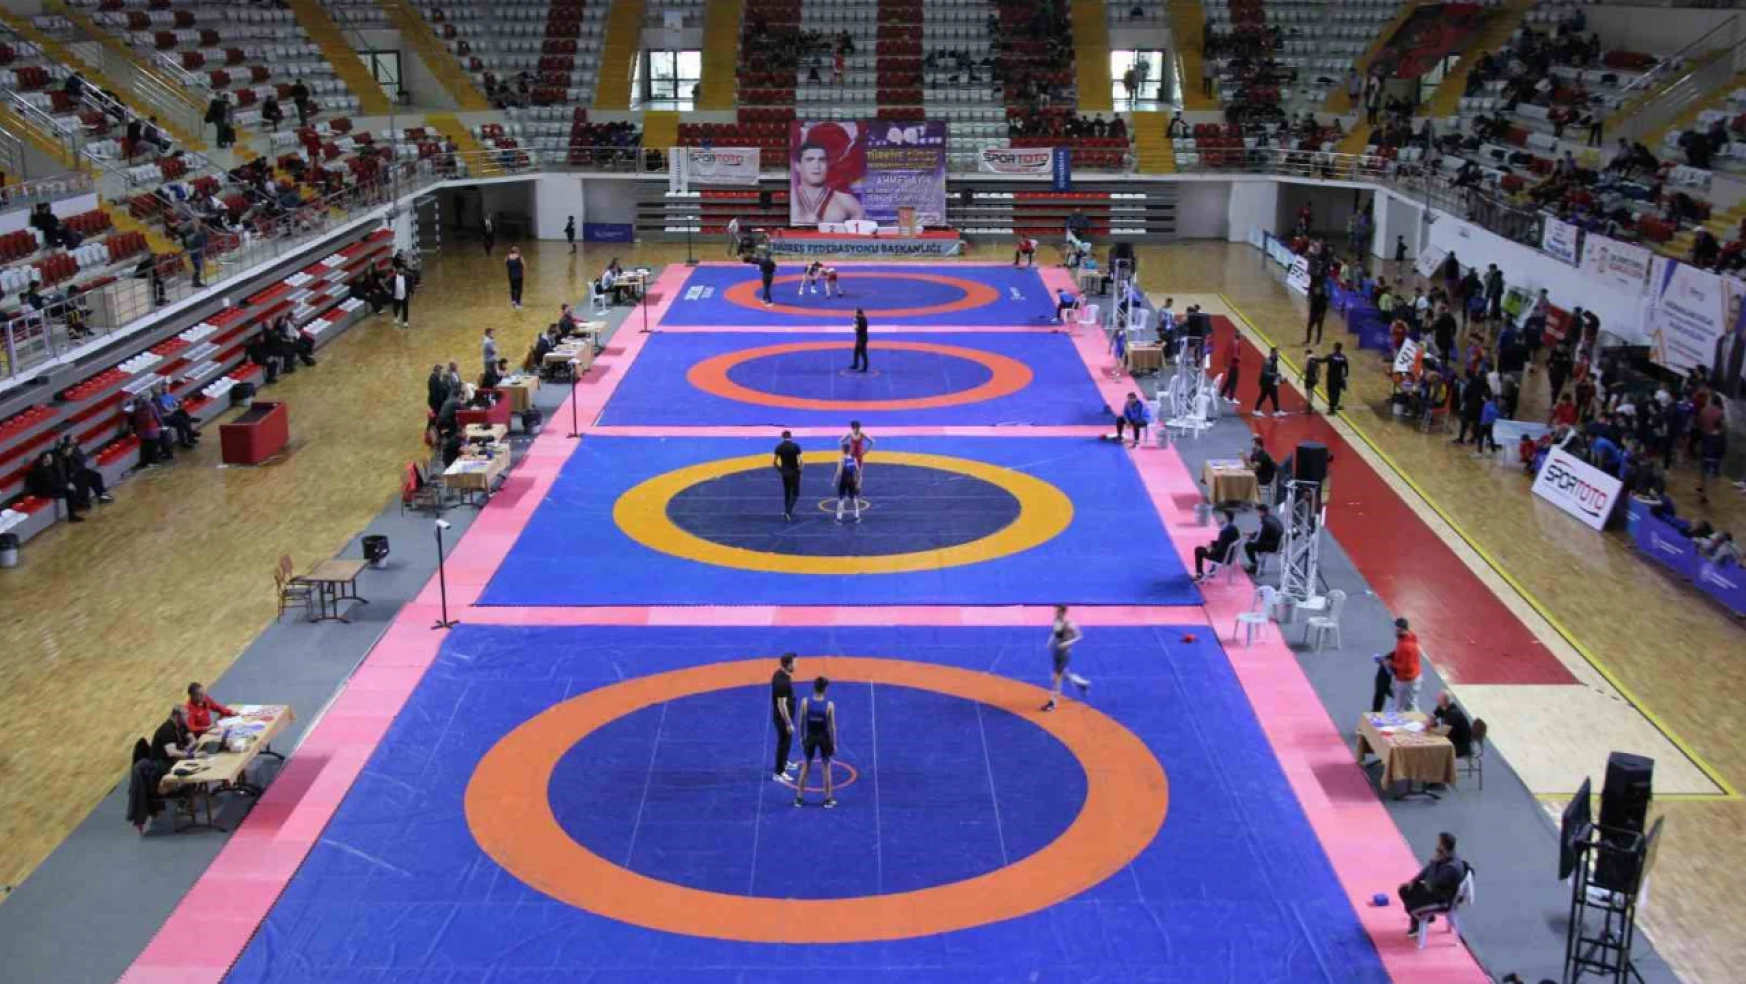 Güreş U15 Türkiye Şampiyonası, Sivas'ta başladı